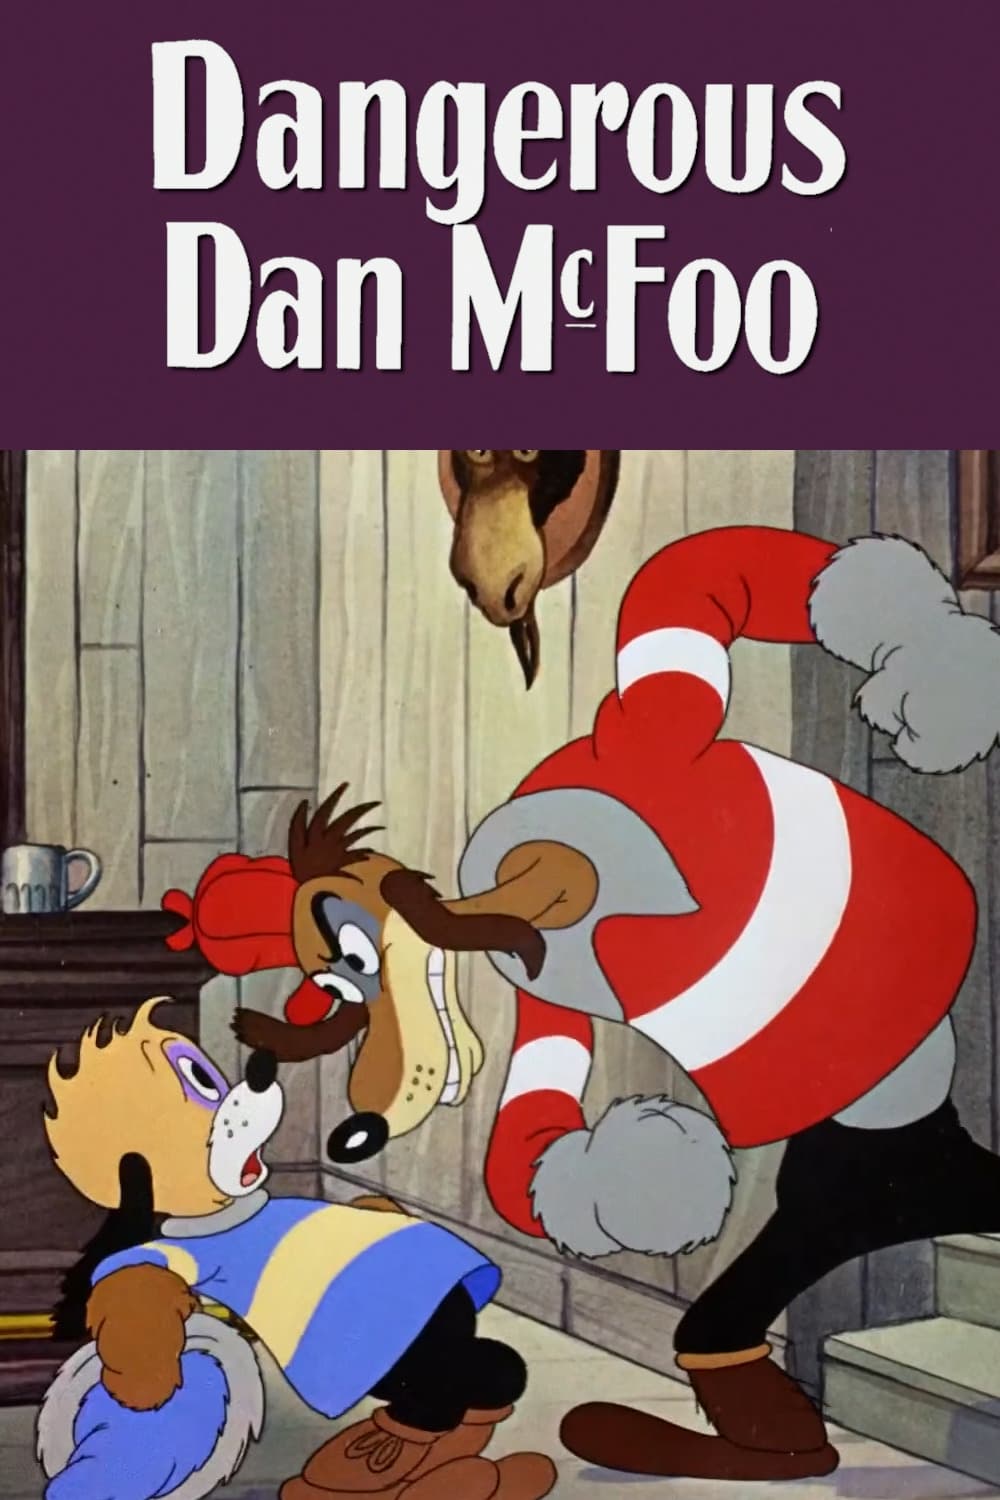 Dangerous Dan McFoo (1939)